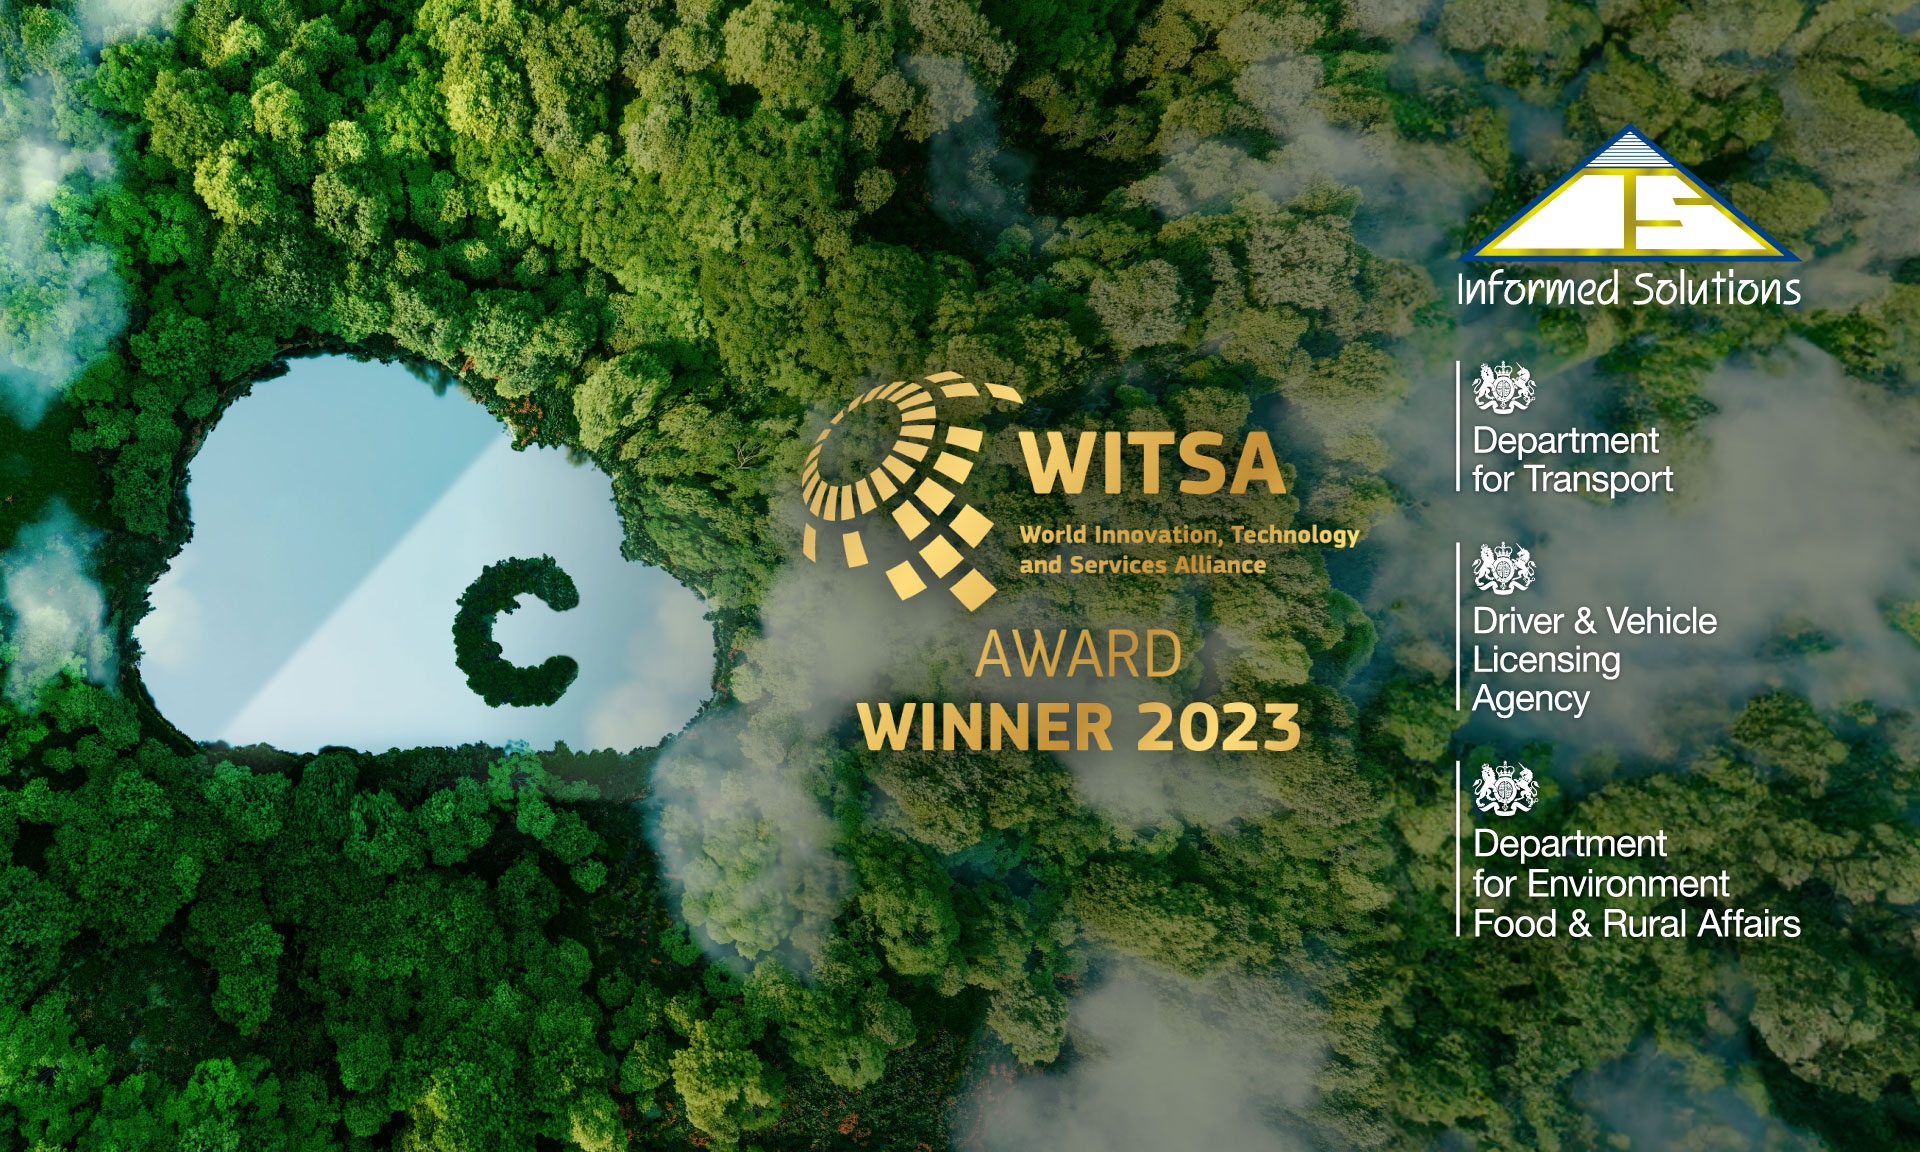 WITSA Awards Winners 2023